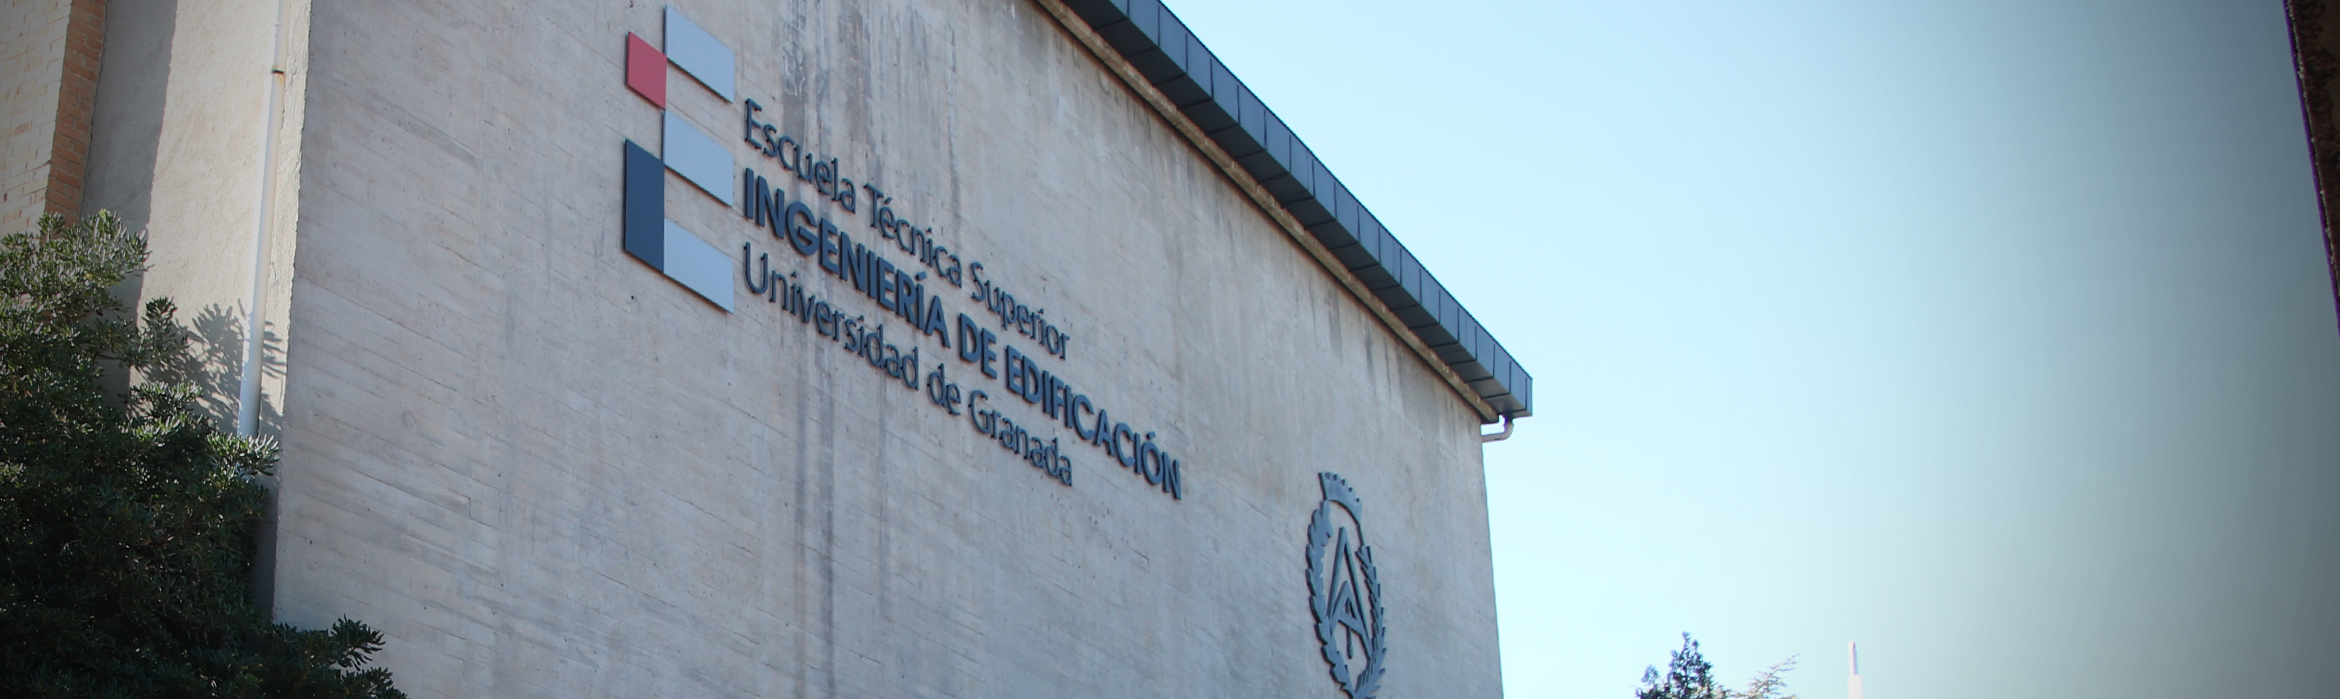 Fachada exterior en donde pone Escuela Técnica Superior de Ingeniería de Edificación, Universidad de Granada, junto al logotipo de la Facultad